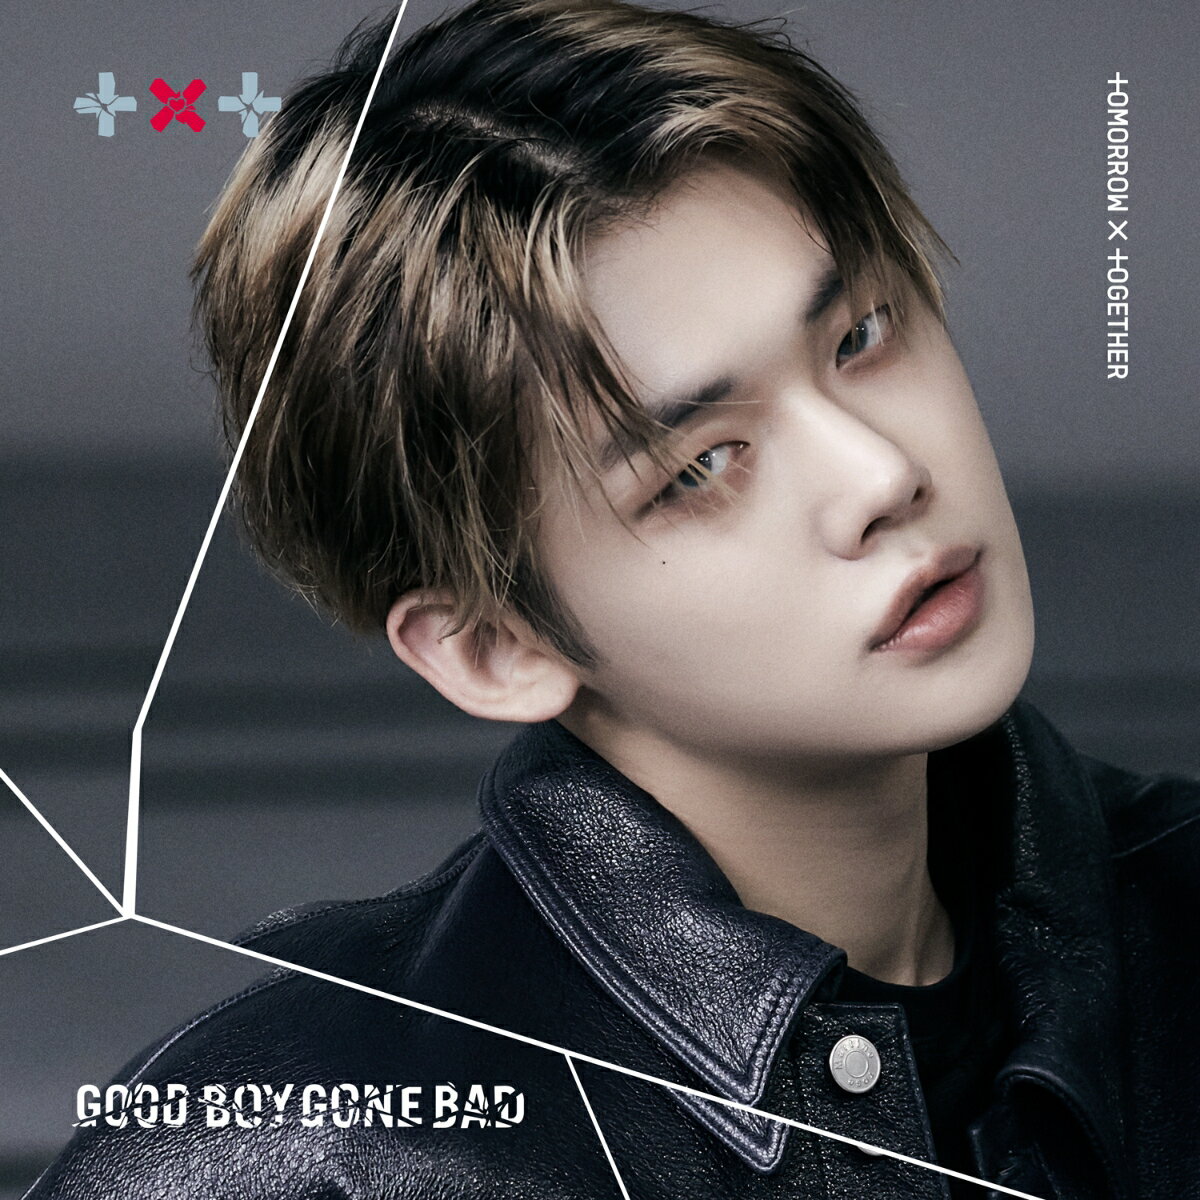 全世界で話題沸騰中のTOMORROW X TOGETHER、8月31日日本3rdシングル「GOOD BOY GONE BAD」発売決定！

発売2日でミリオンセラーを達成した最新の韓国4th Mini Album『minisode 2: Thursday’s Child』の
リードトラック「Good Boy Gone Bad」の日本語ヴァージョンに加え、メンバーがMOAのために作曲をした新曲、
さらにシンガーソングライターの川崎鷹也による楽曲提供の新曲を収録。
日本オリジナル曲が2曲収録されるのはTOMORROW X TOGETHERの日本シングルとしては初。